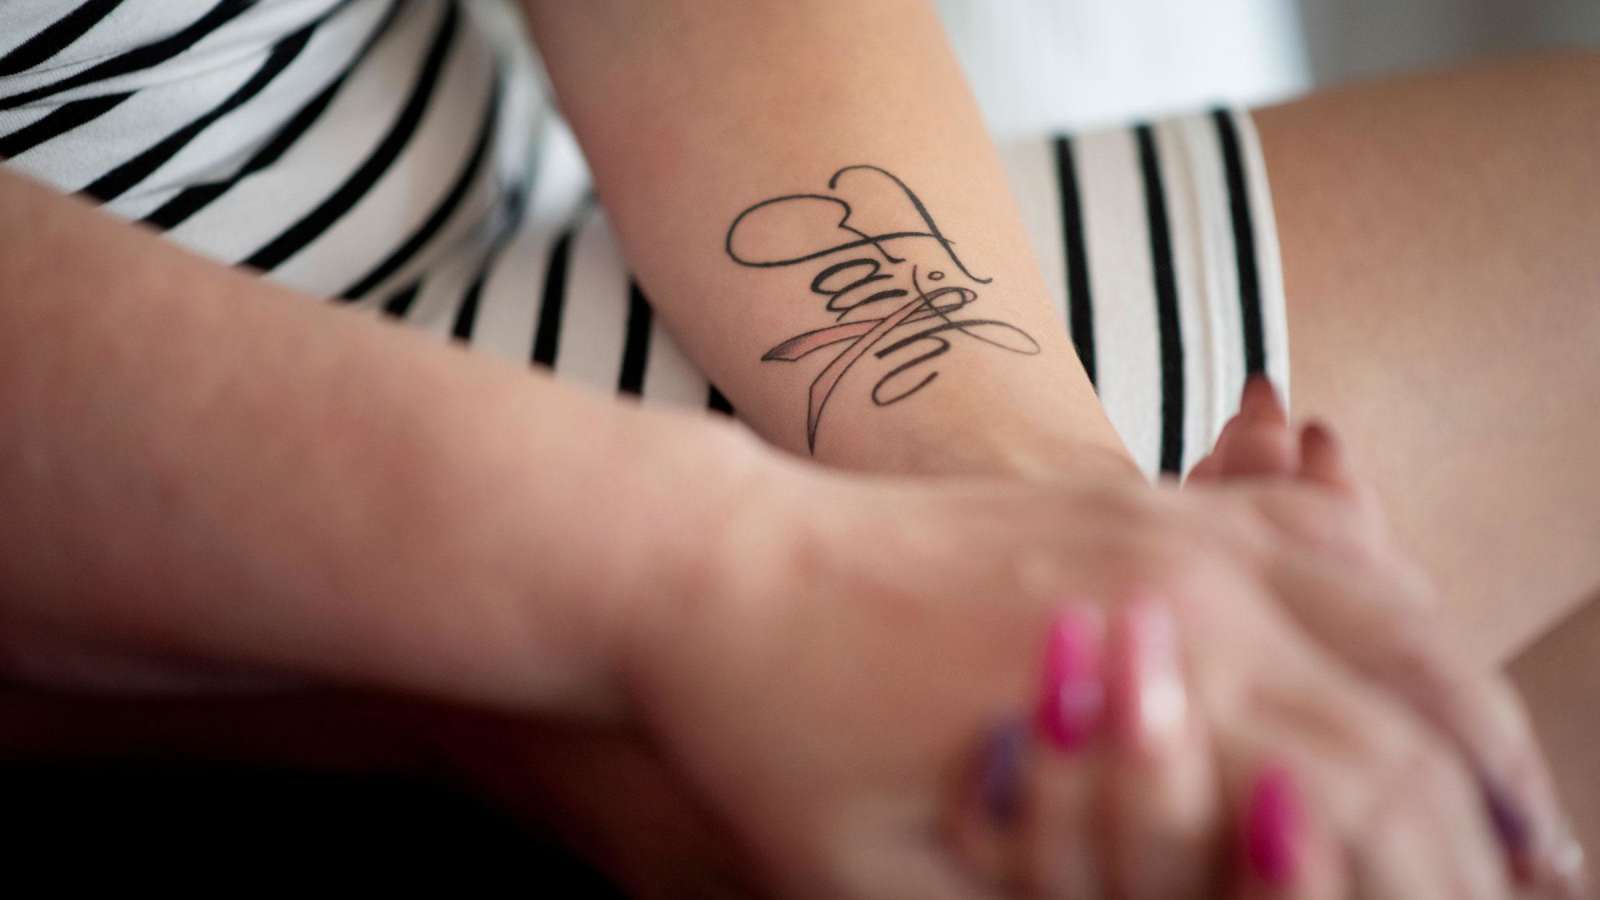 Tiitulotta Villmanin käsivarressa on tatuointi Faith, usko.